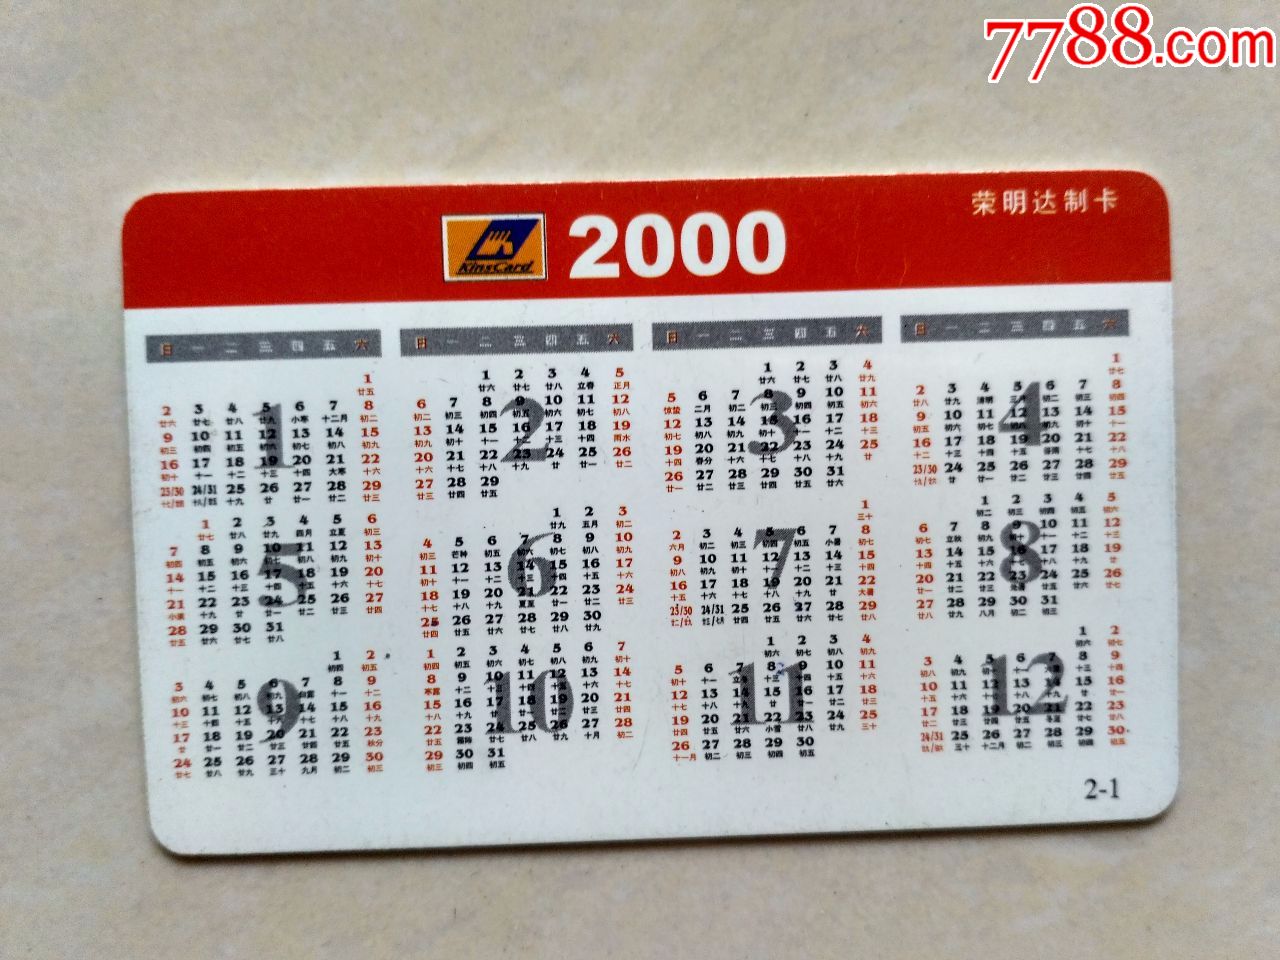 2000年年历卡中国农业银行北京市分行金穗卡伴你走向新世纪